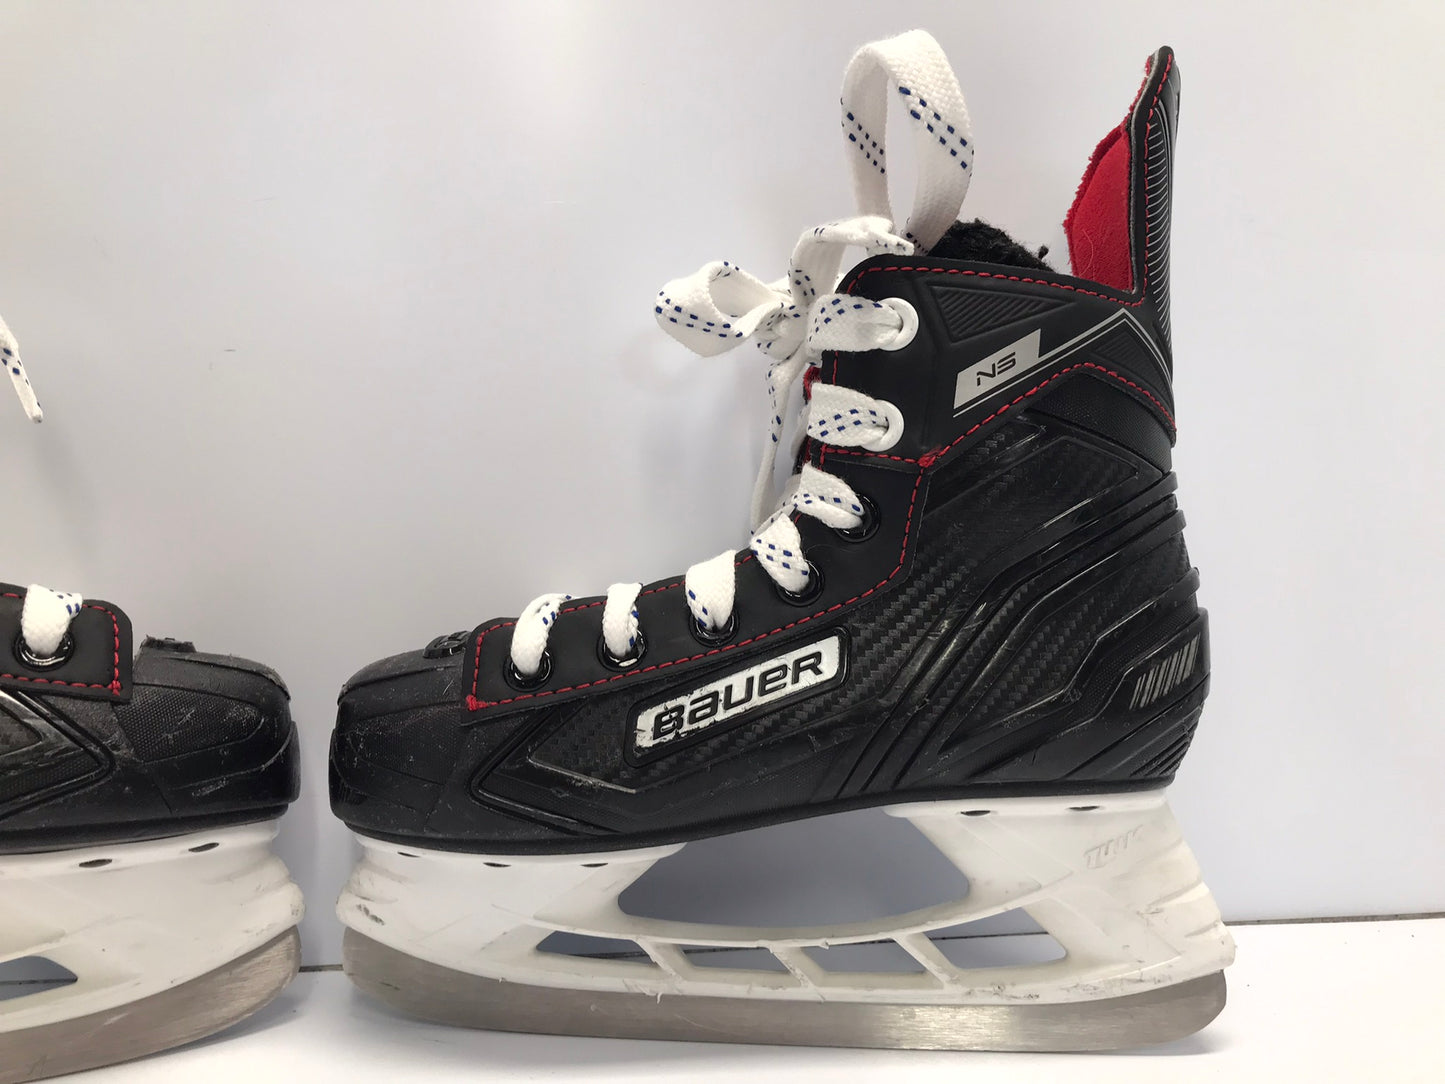 Hockey Skates Child Size 1.5 Shoe Size Bauer NS